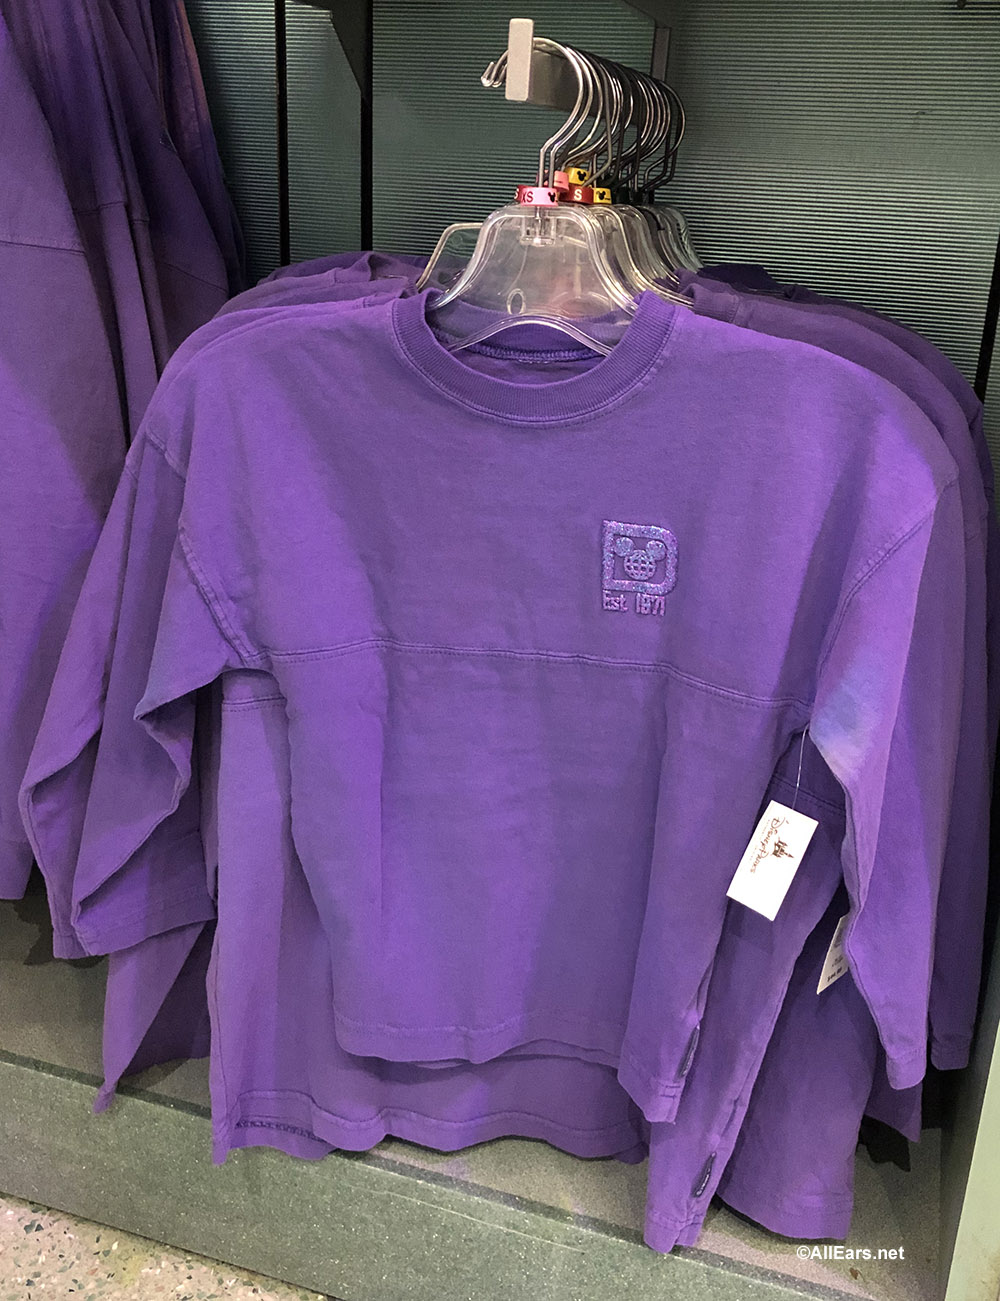 purple disneyland spirit jersey